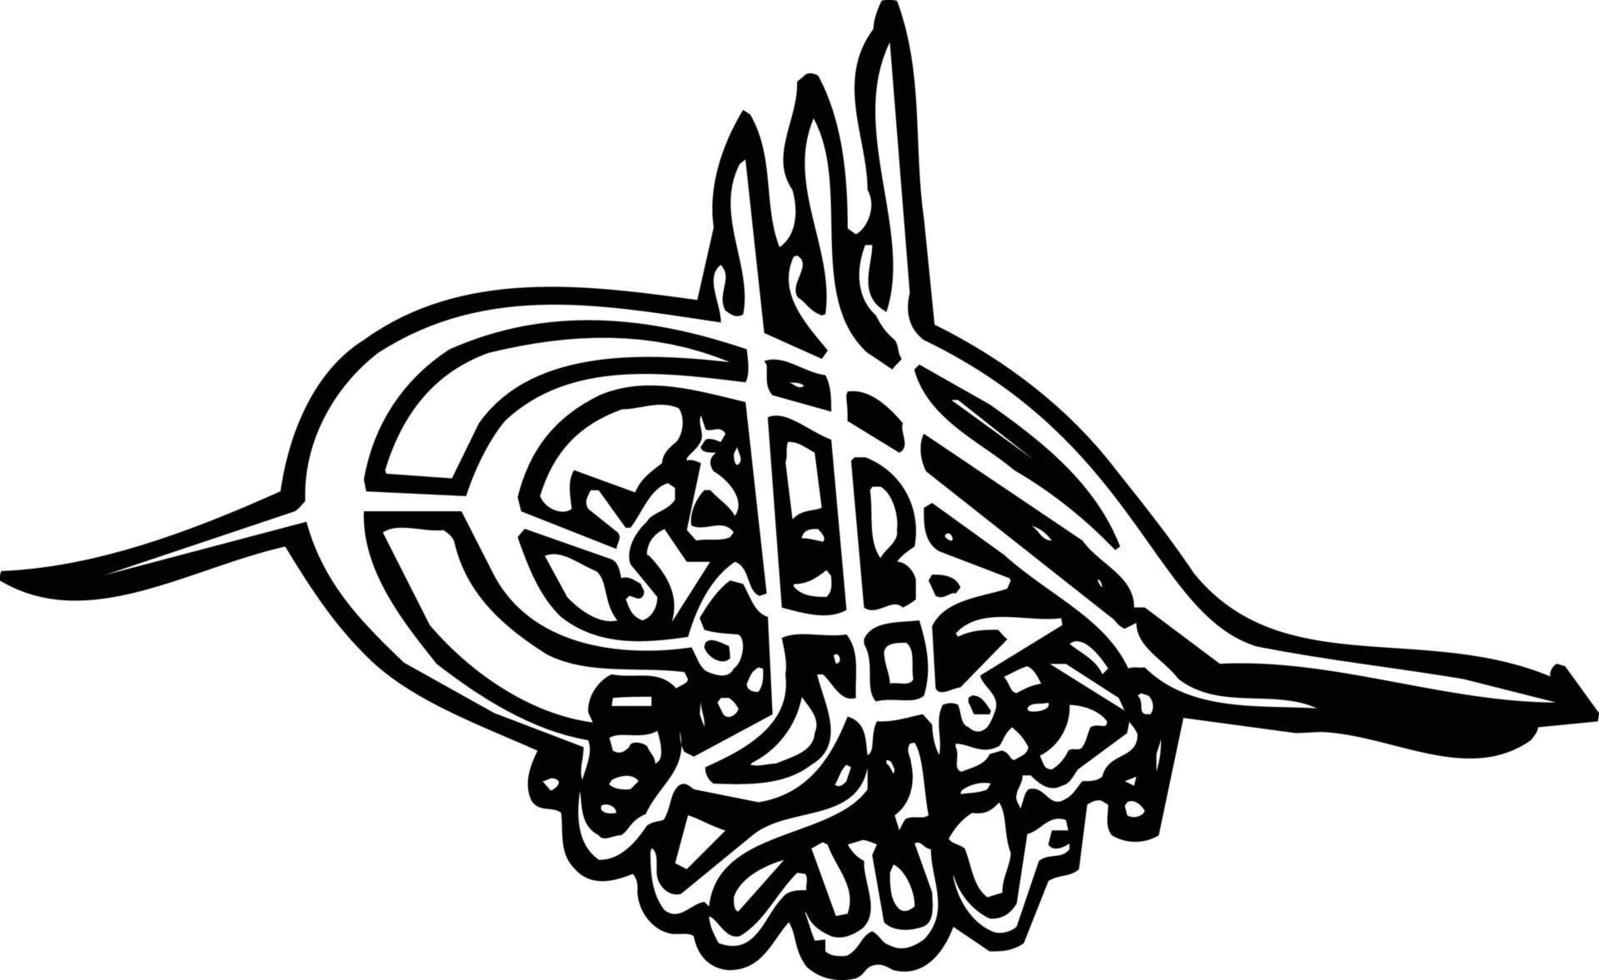 bismila titolo islamico calligrafia gratuito vettore